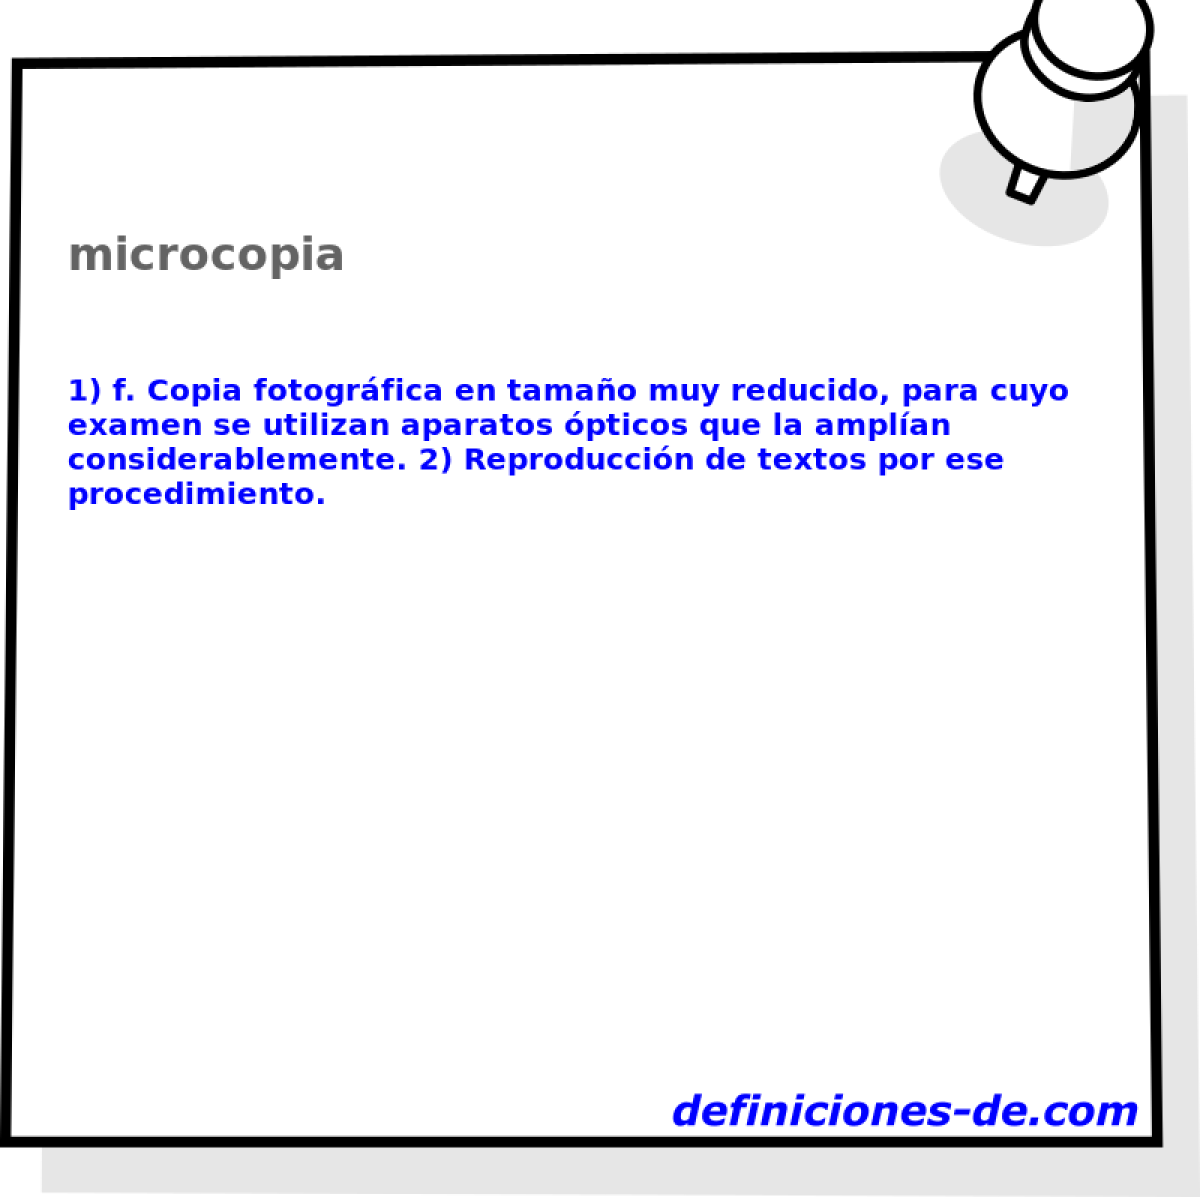 microcopia 